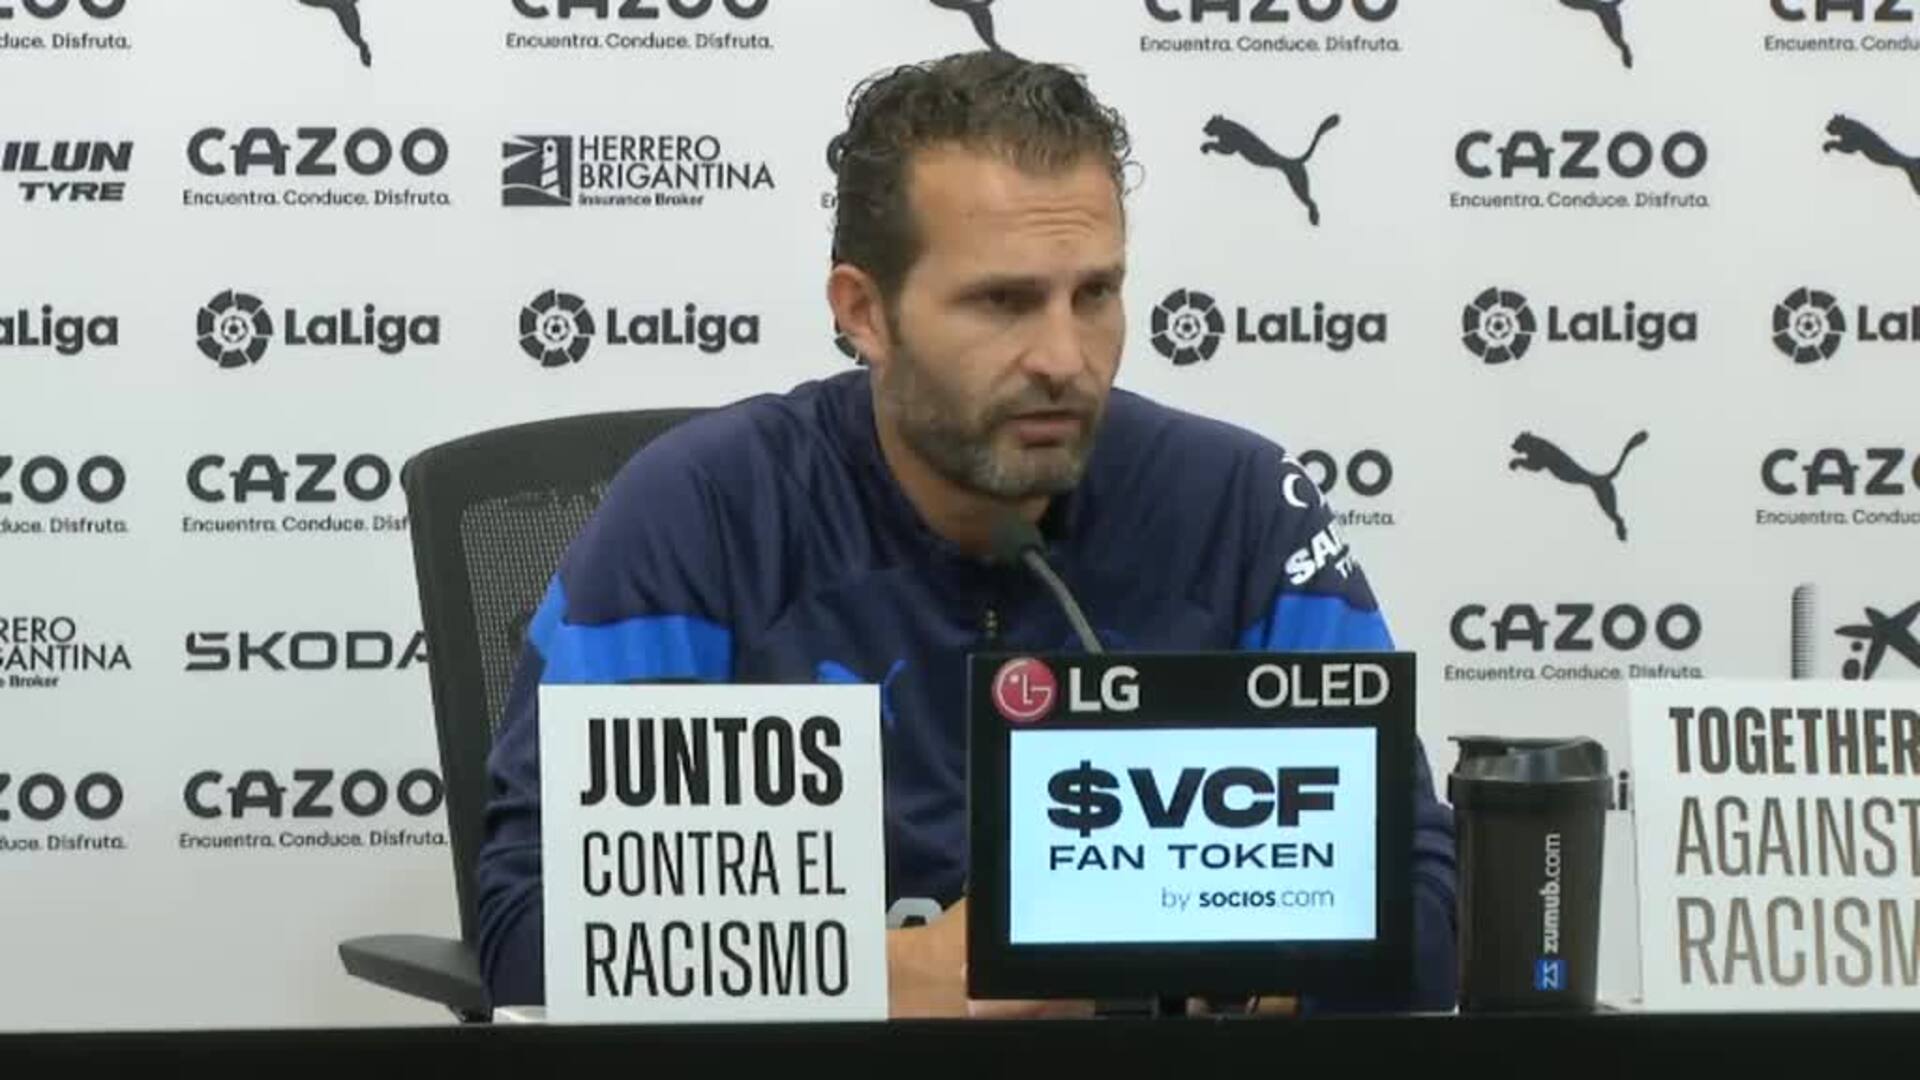 Baraja cree que la sanción al Valencia es "desproporcionada e injusta" y pide respeto para su afición